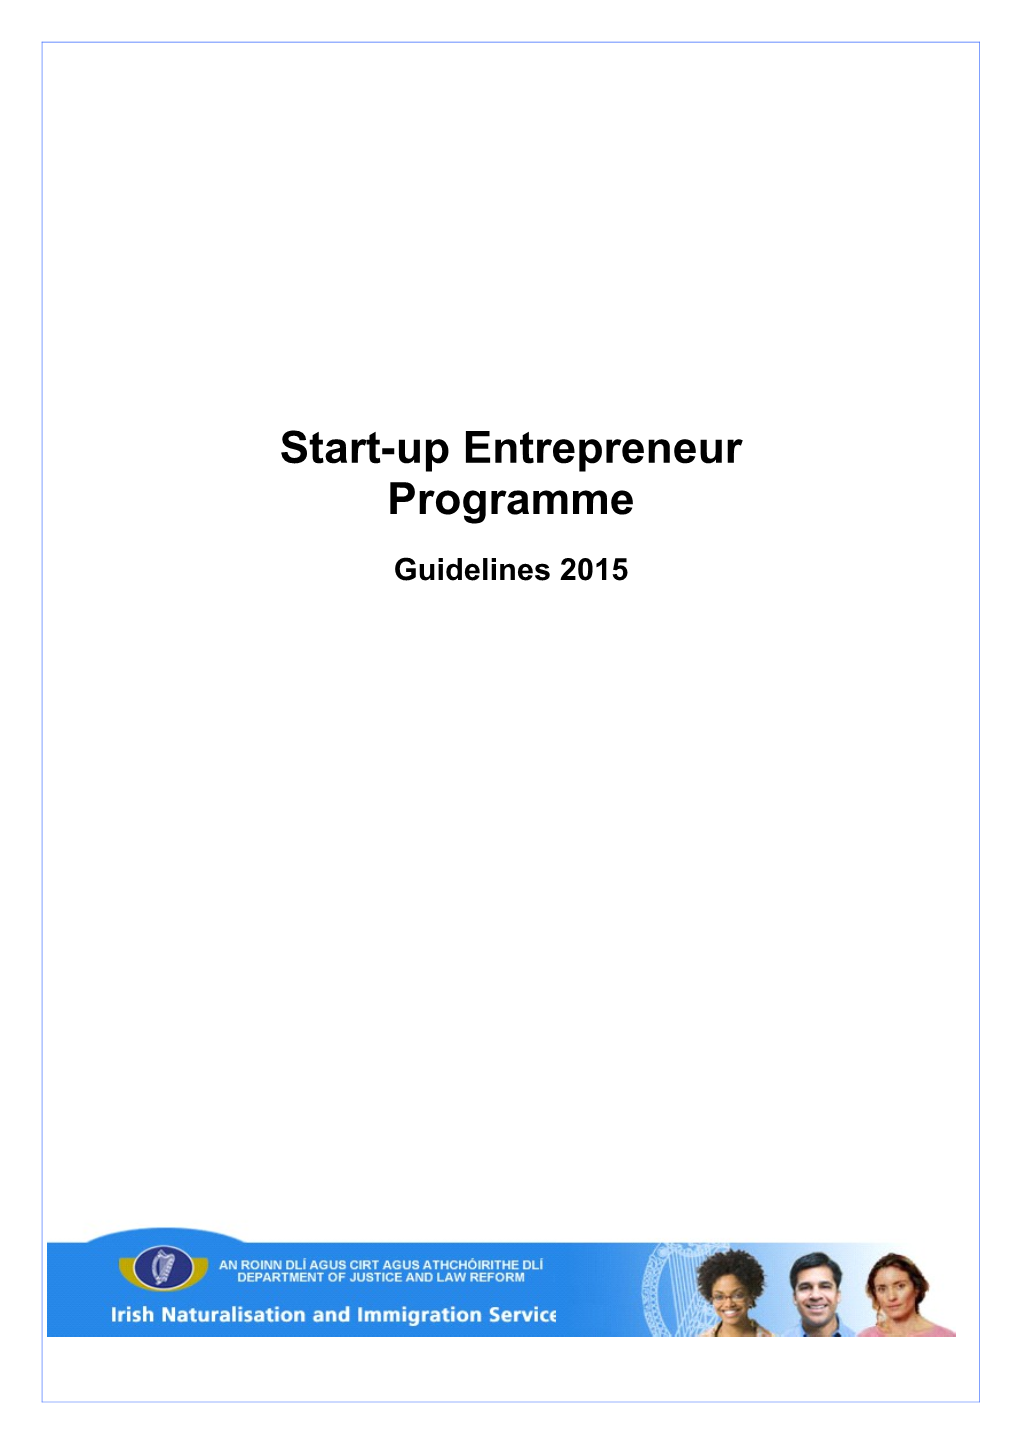 Start-Up Entrepreneur Programme